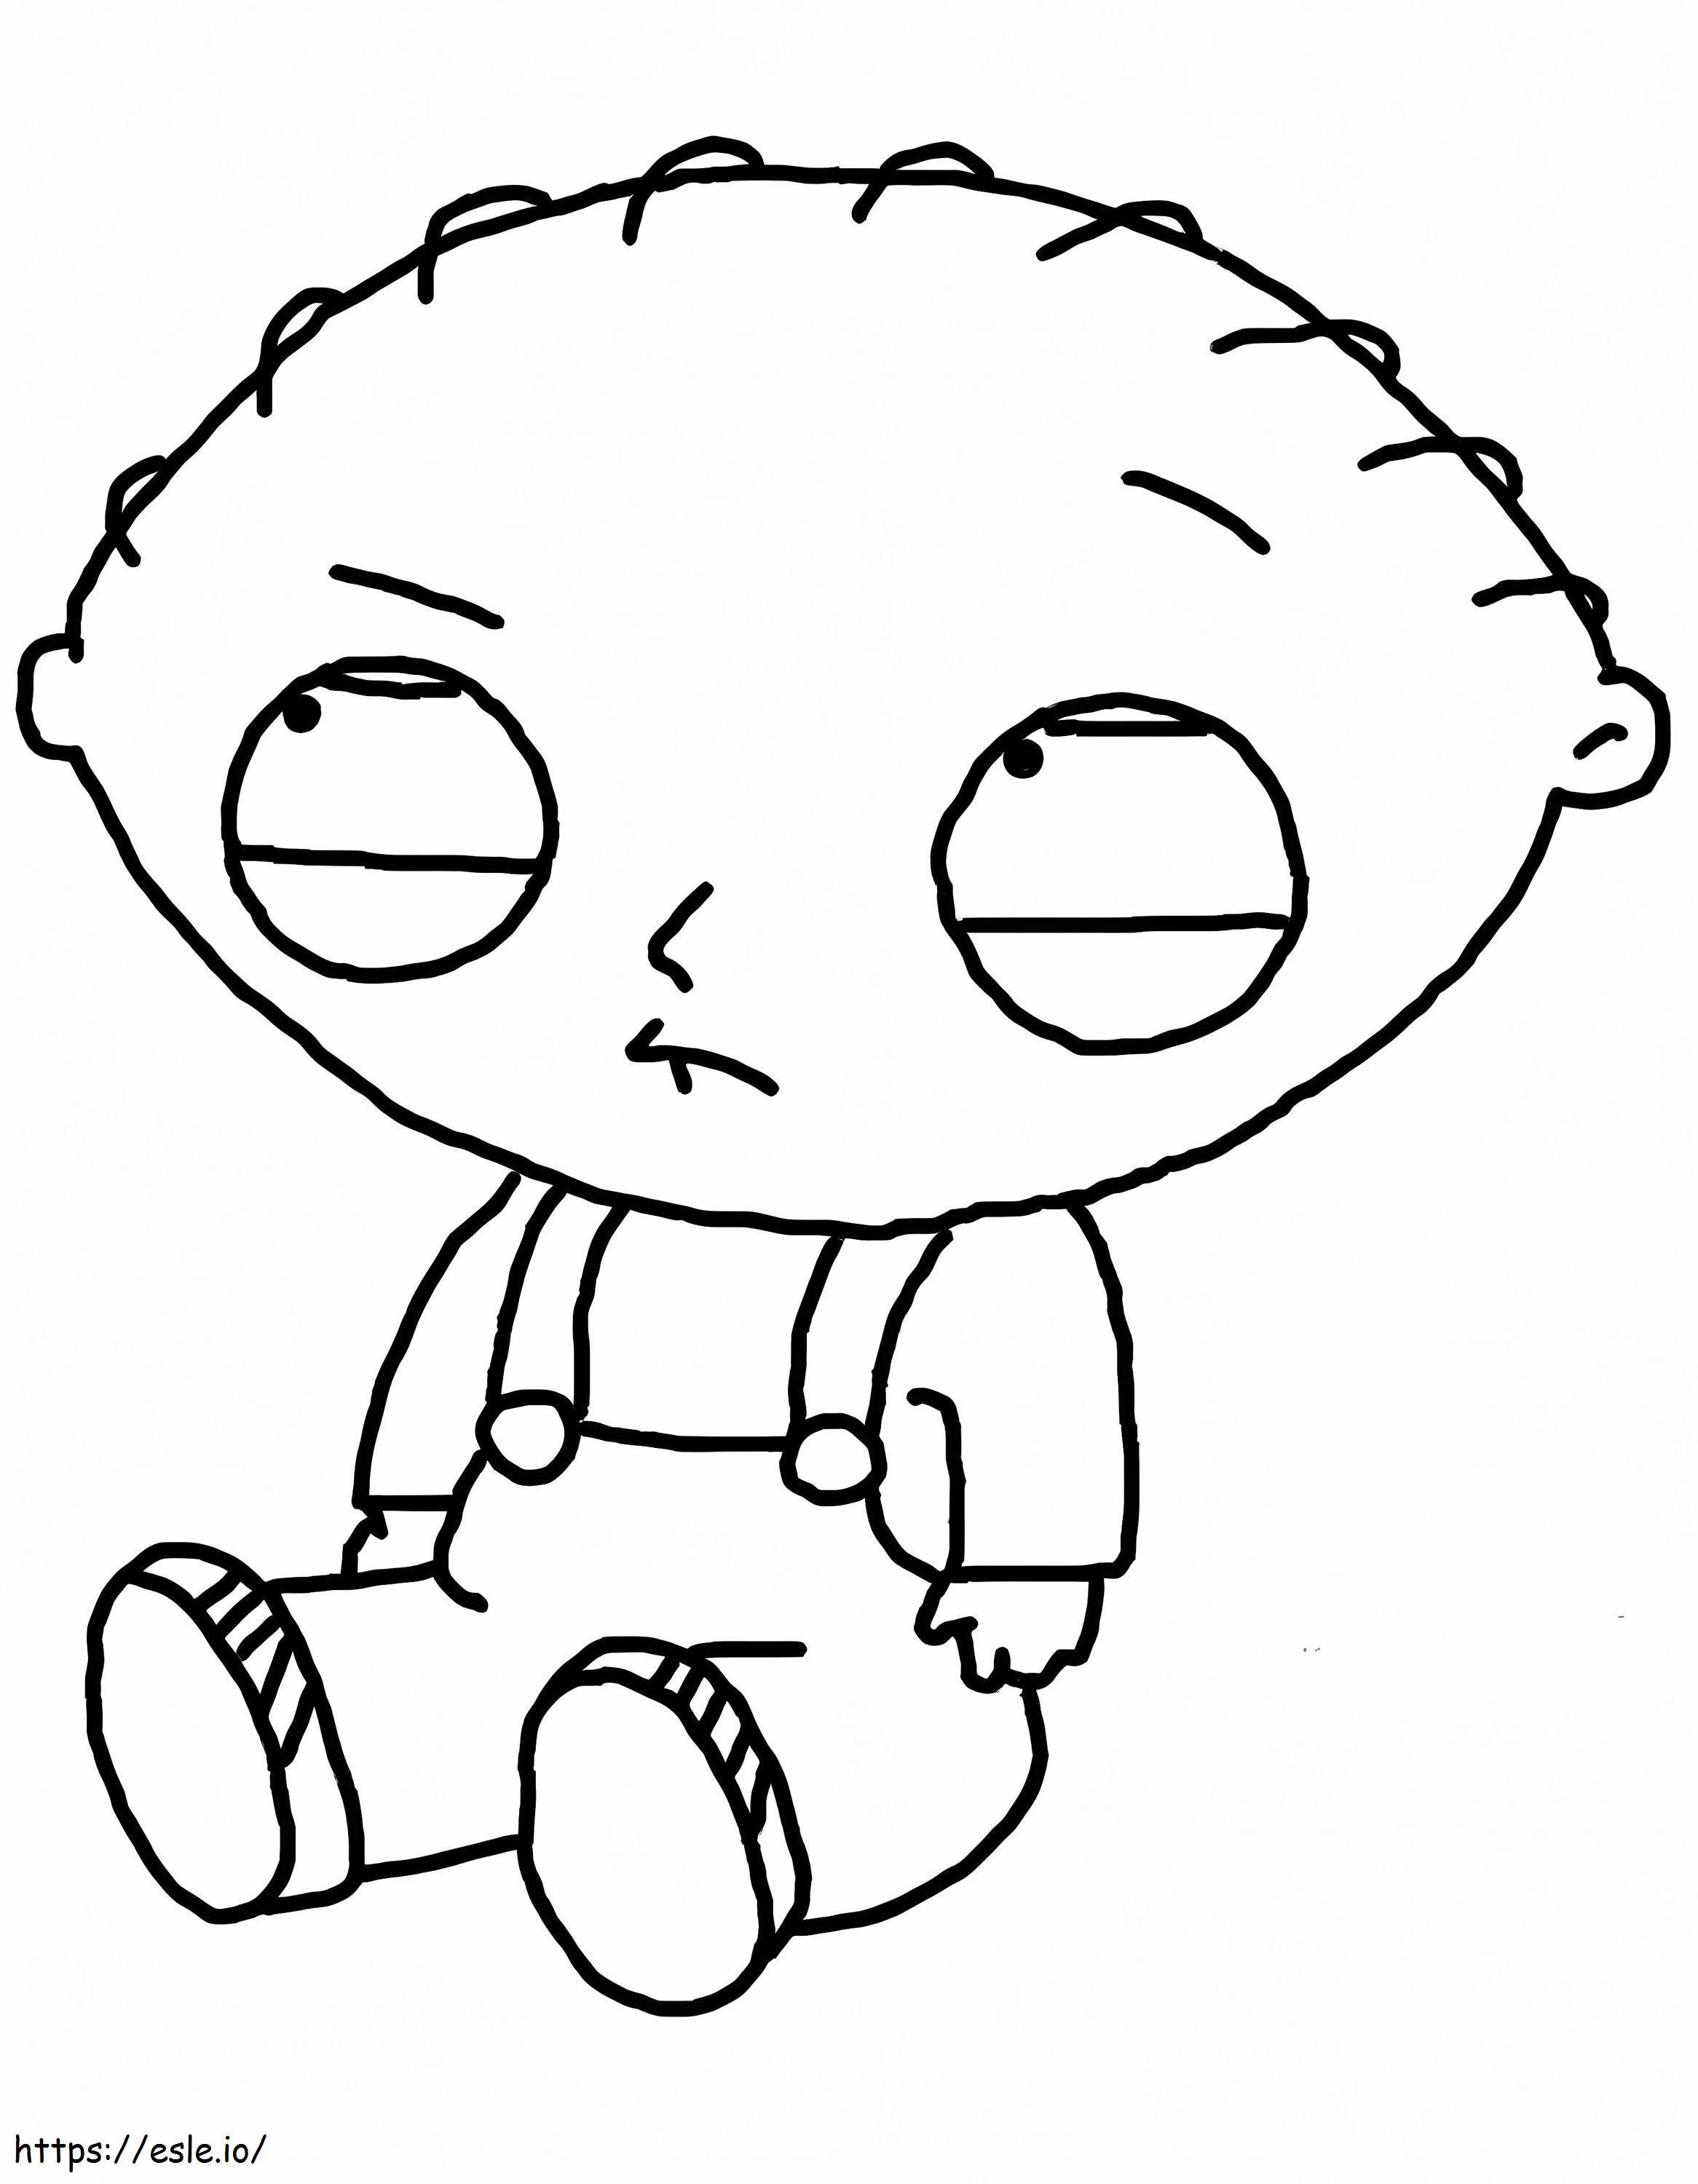 Stewie Griffin Sentado coloring page